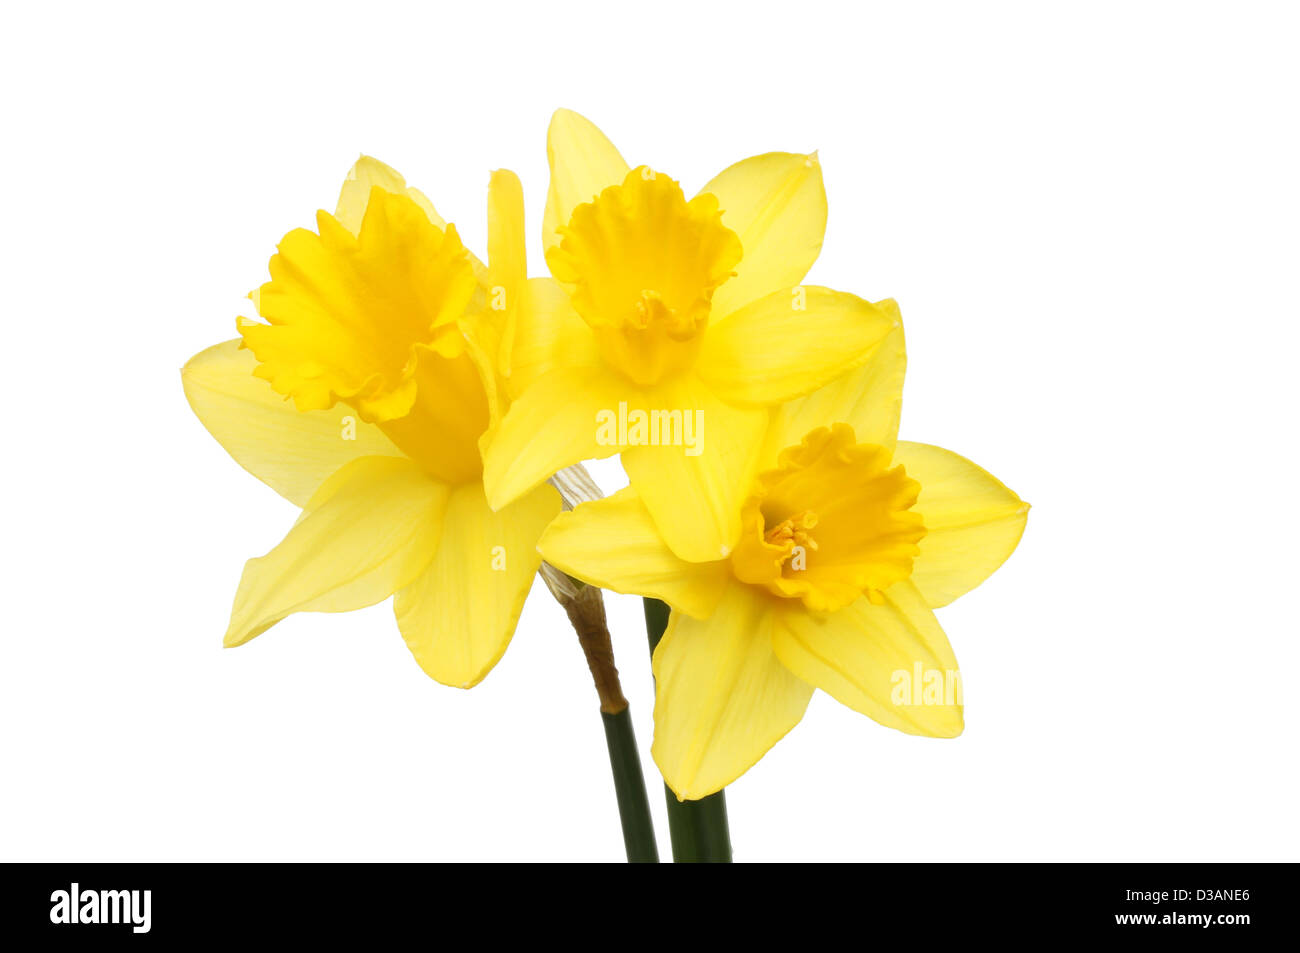 Trois fleurs d'or jaune jonquille isolés contre white Banque D'Images